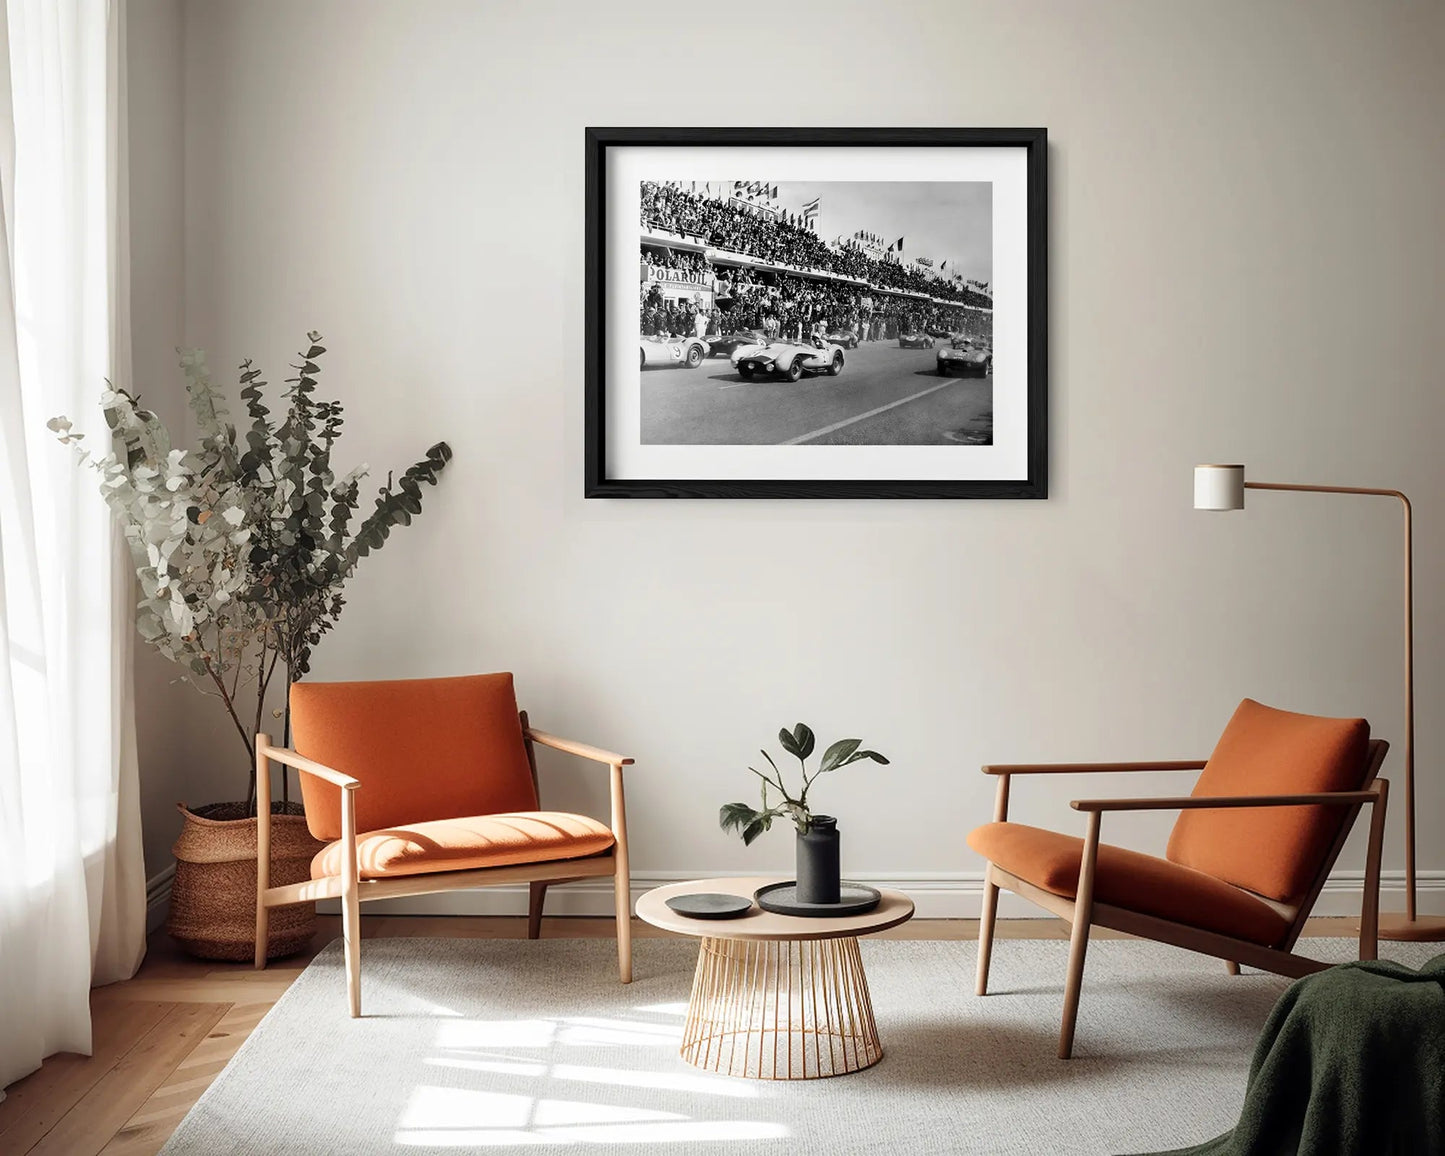 Partenza della 24 Ore di Le Mans, 1958 - Farabola Fotografia